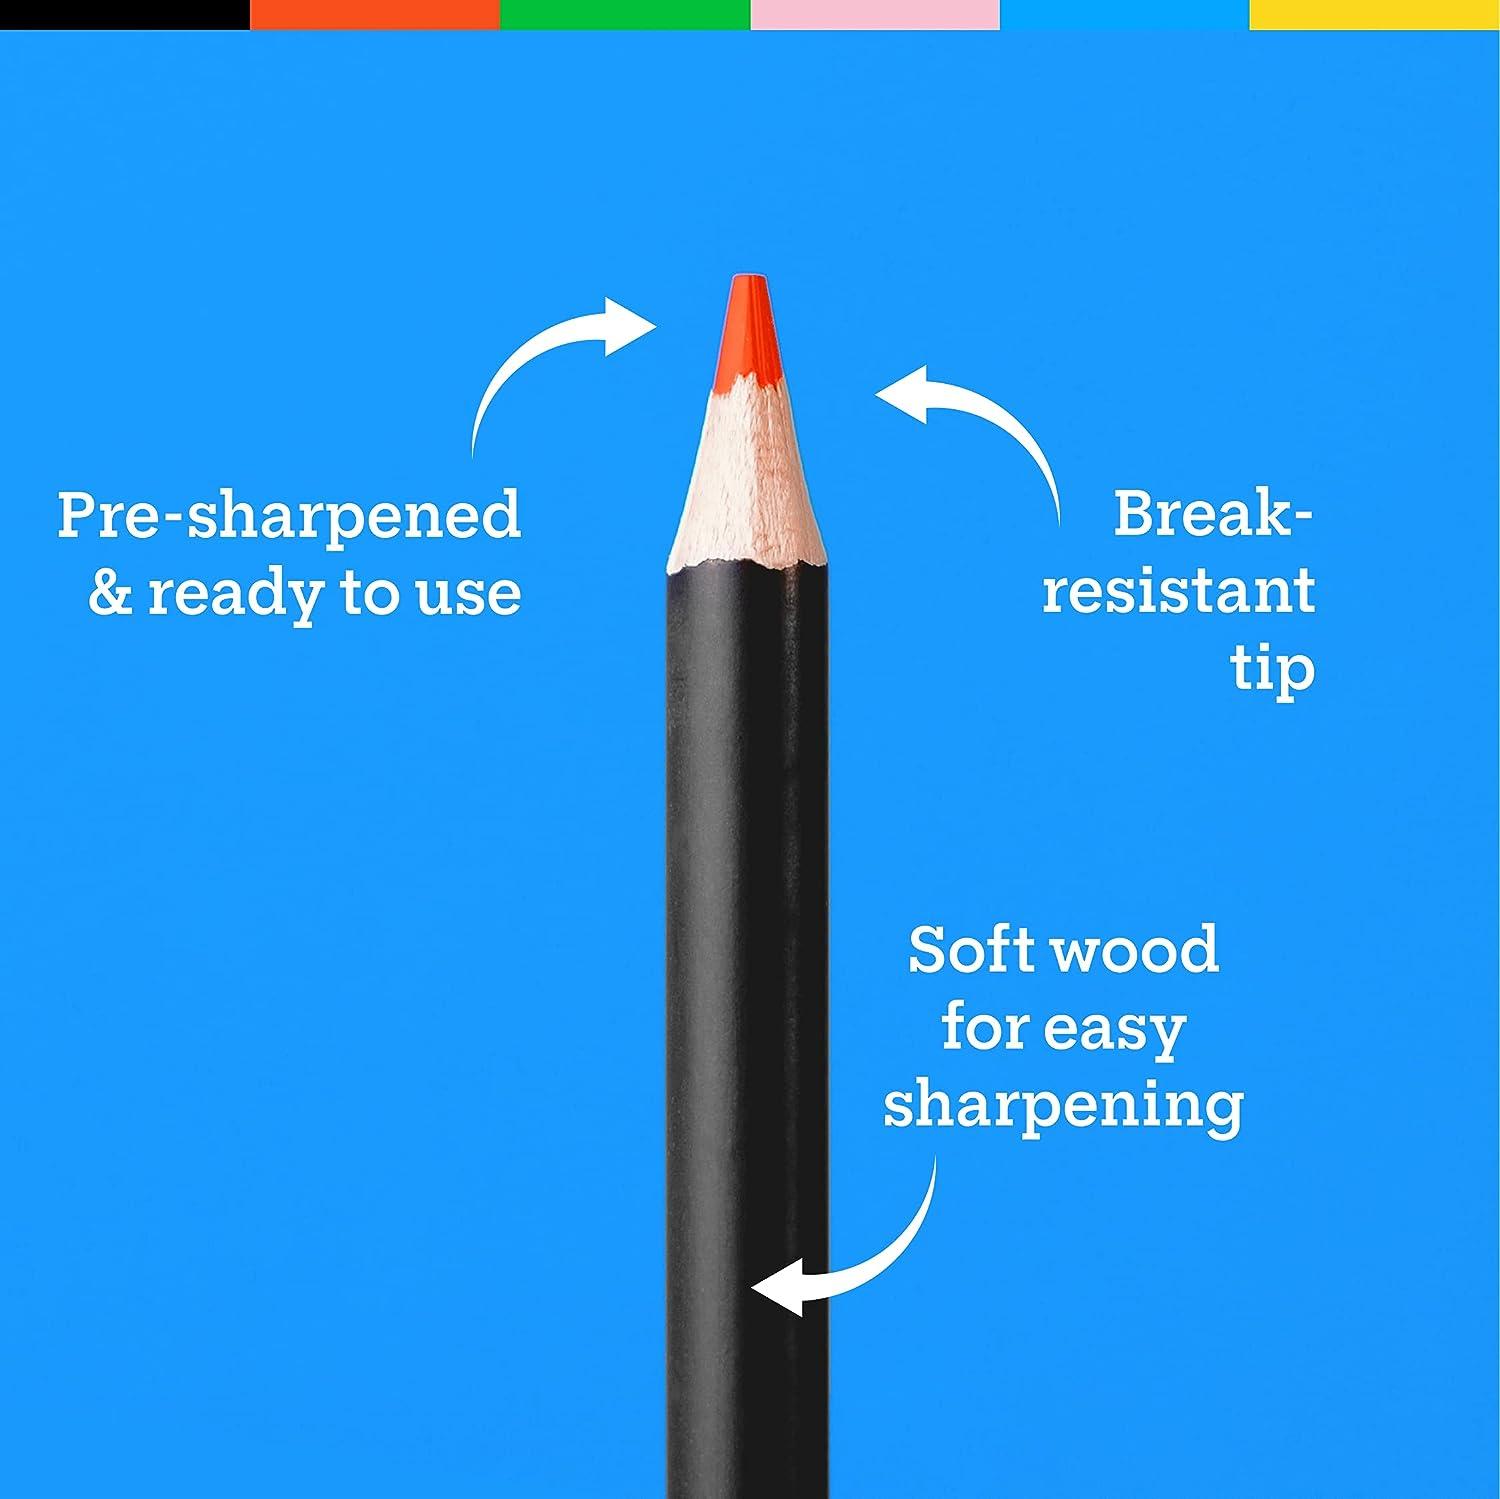 Pencils Favorites Bundle, Fuel Your Creativity  Acrylic paint set, Colored  pencil set, Colored pencils